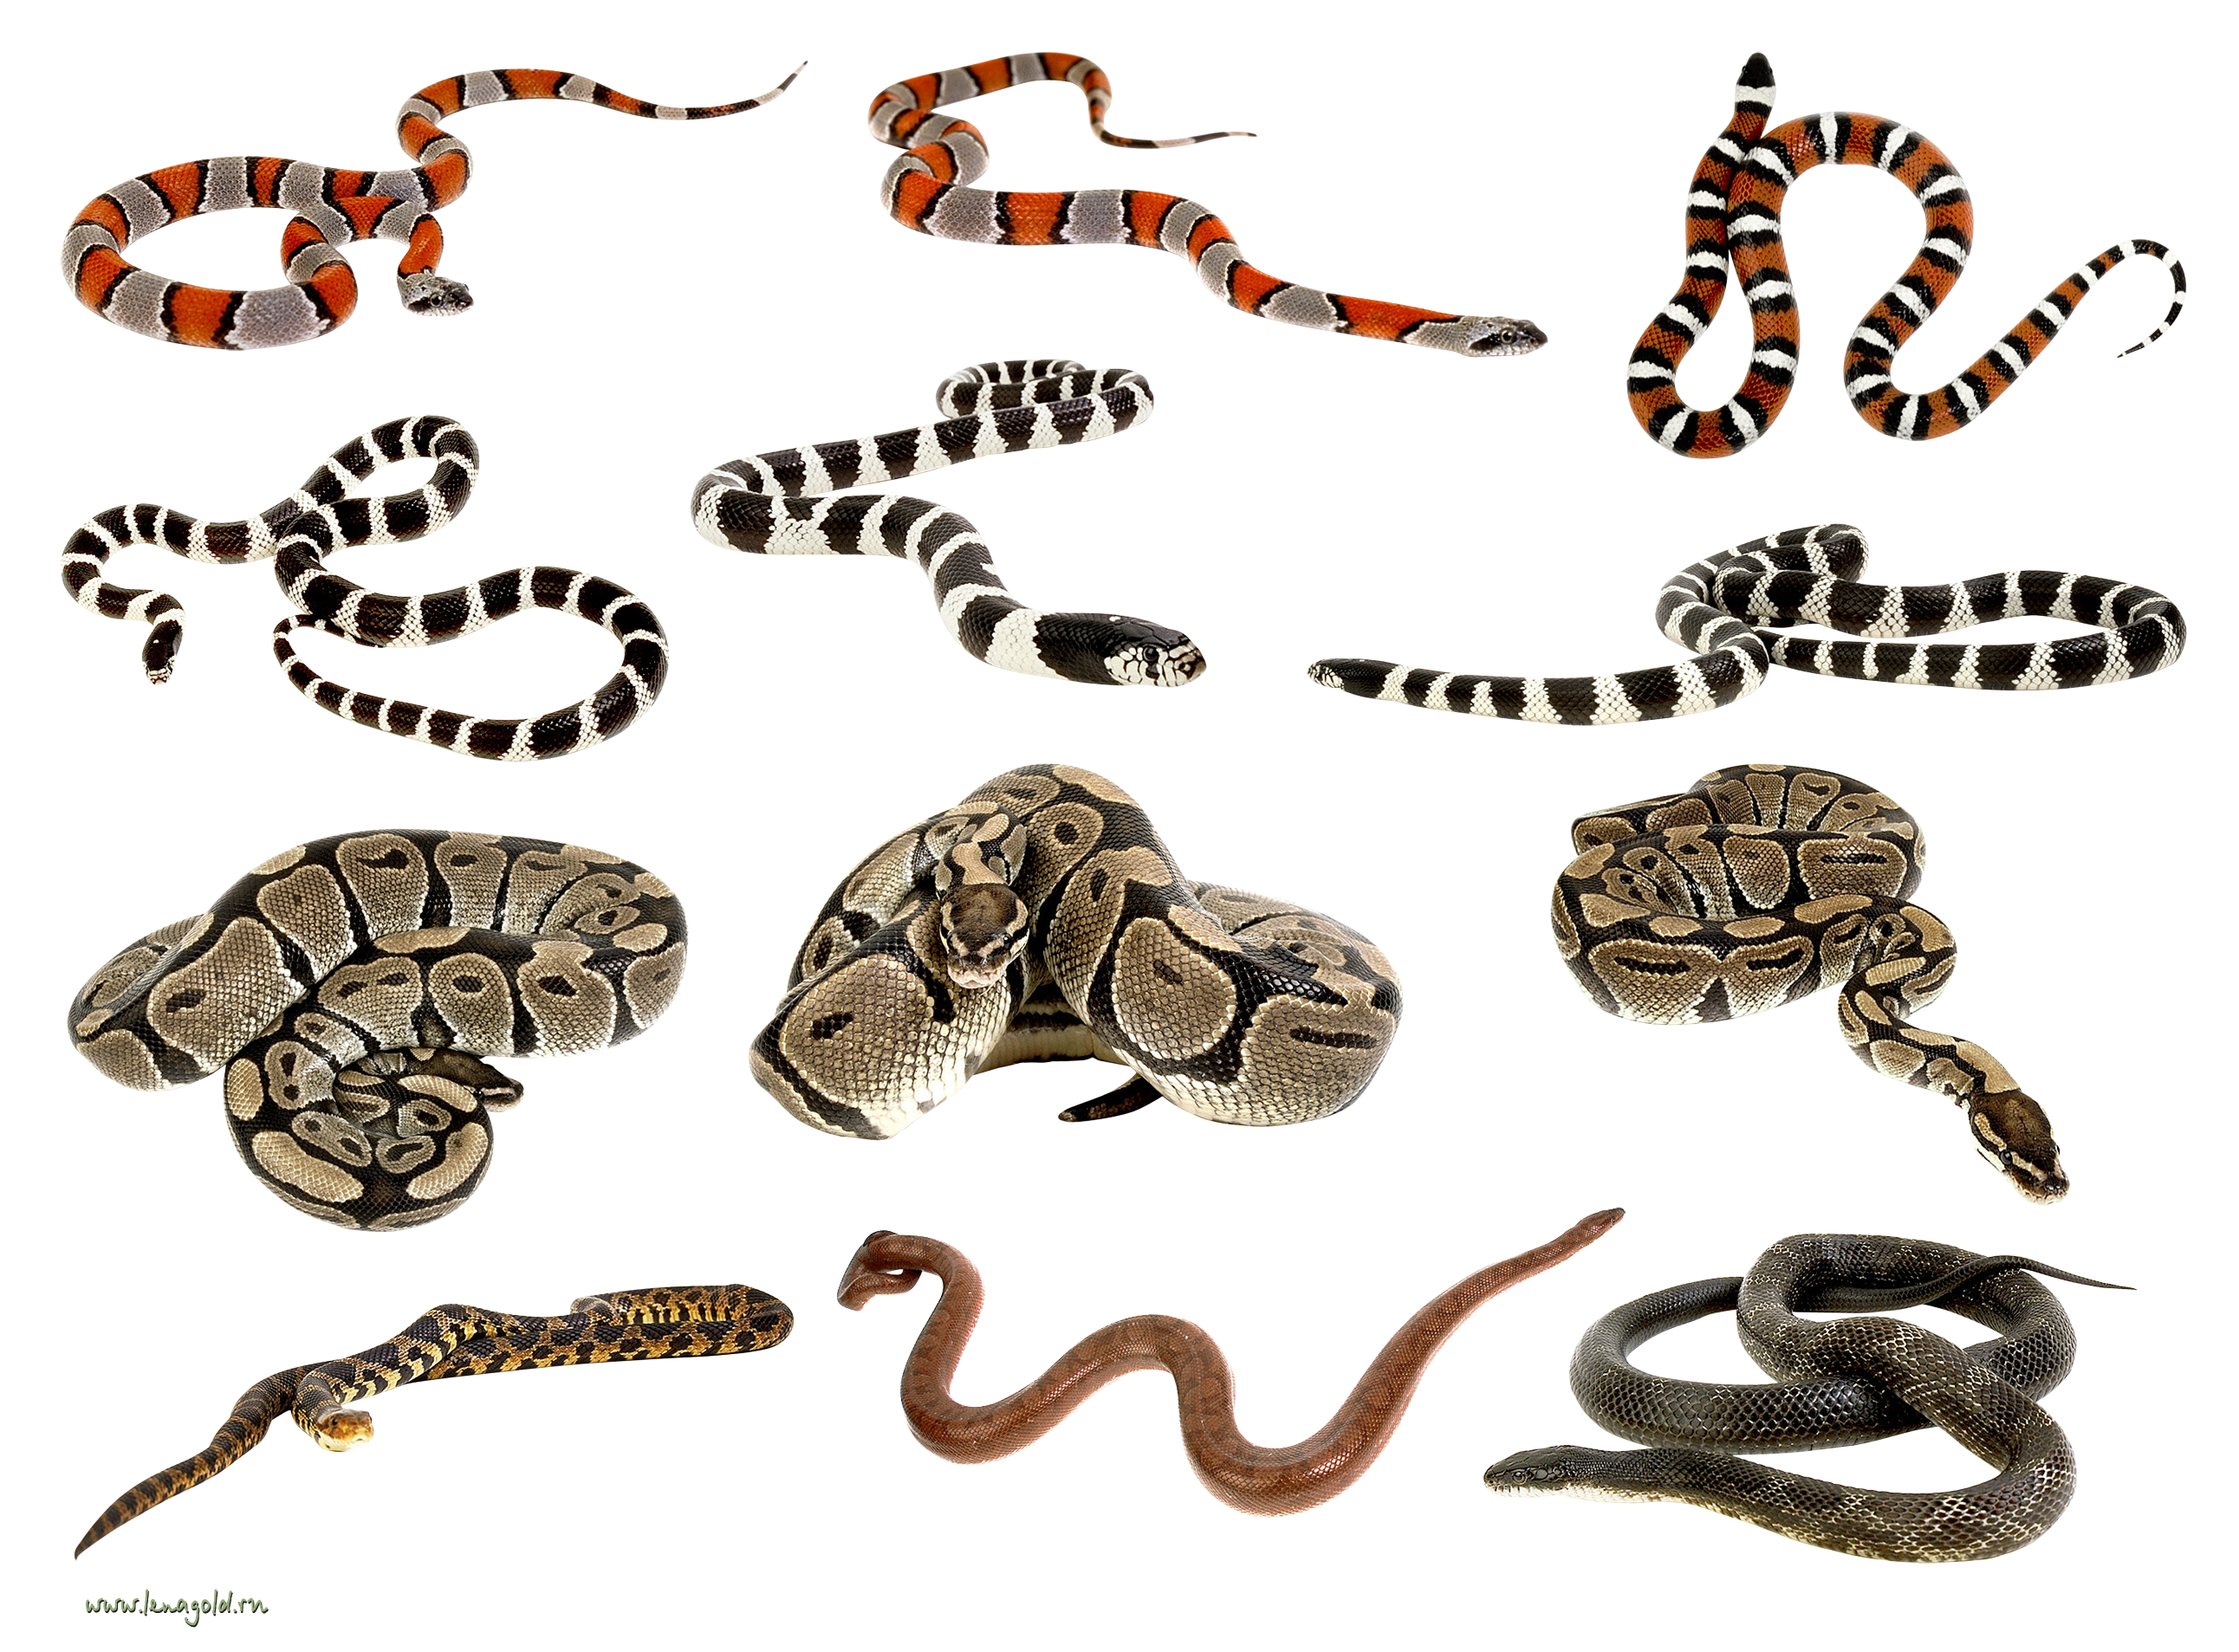 Più serpenti insieme